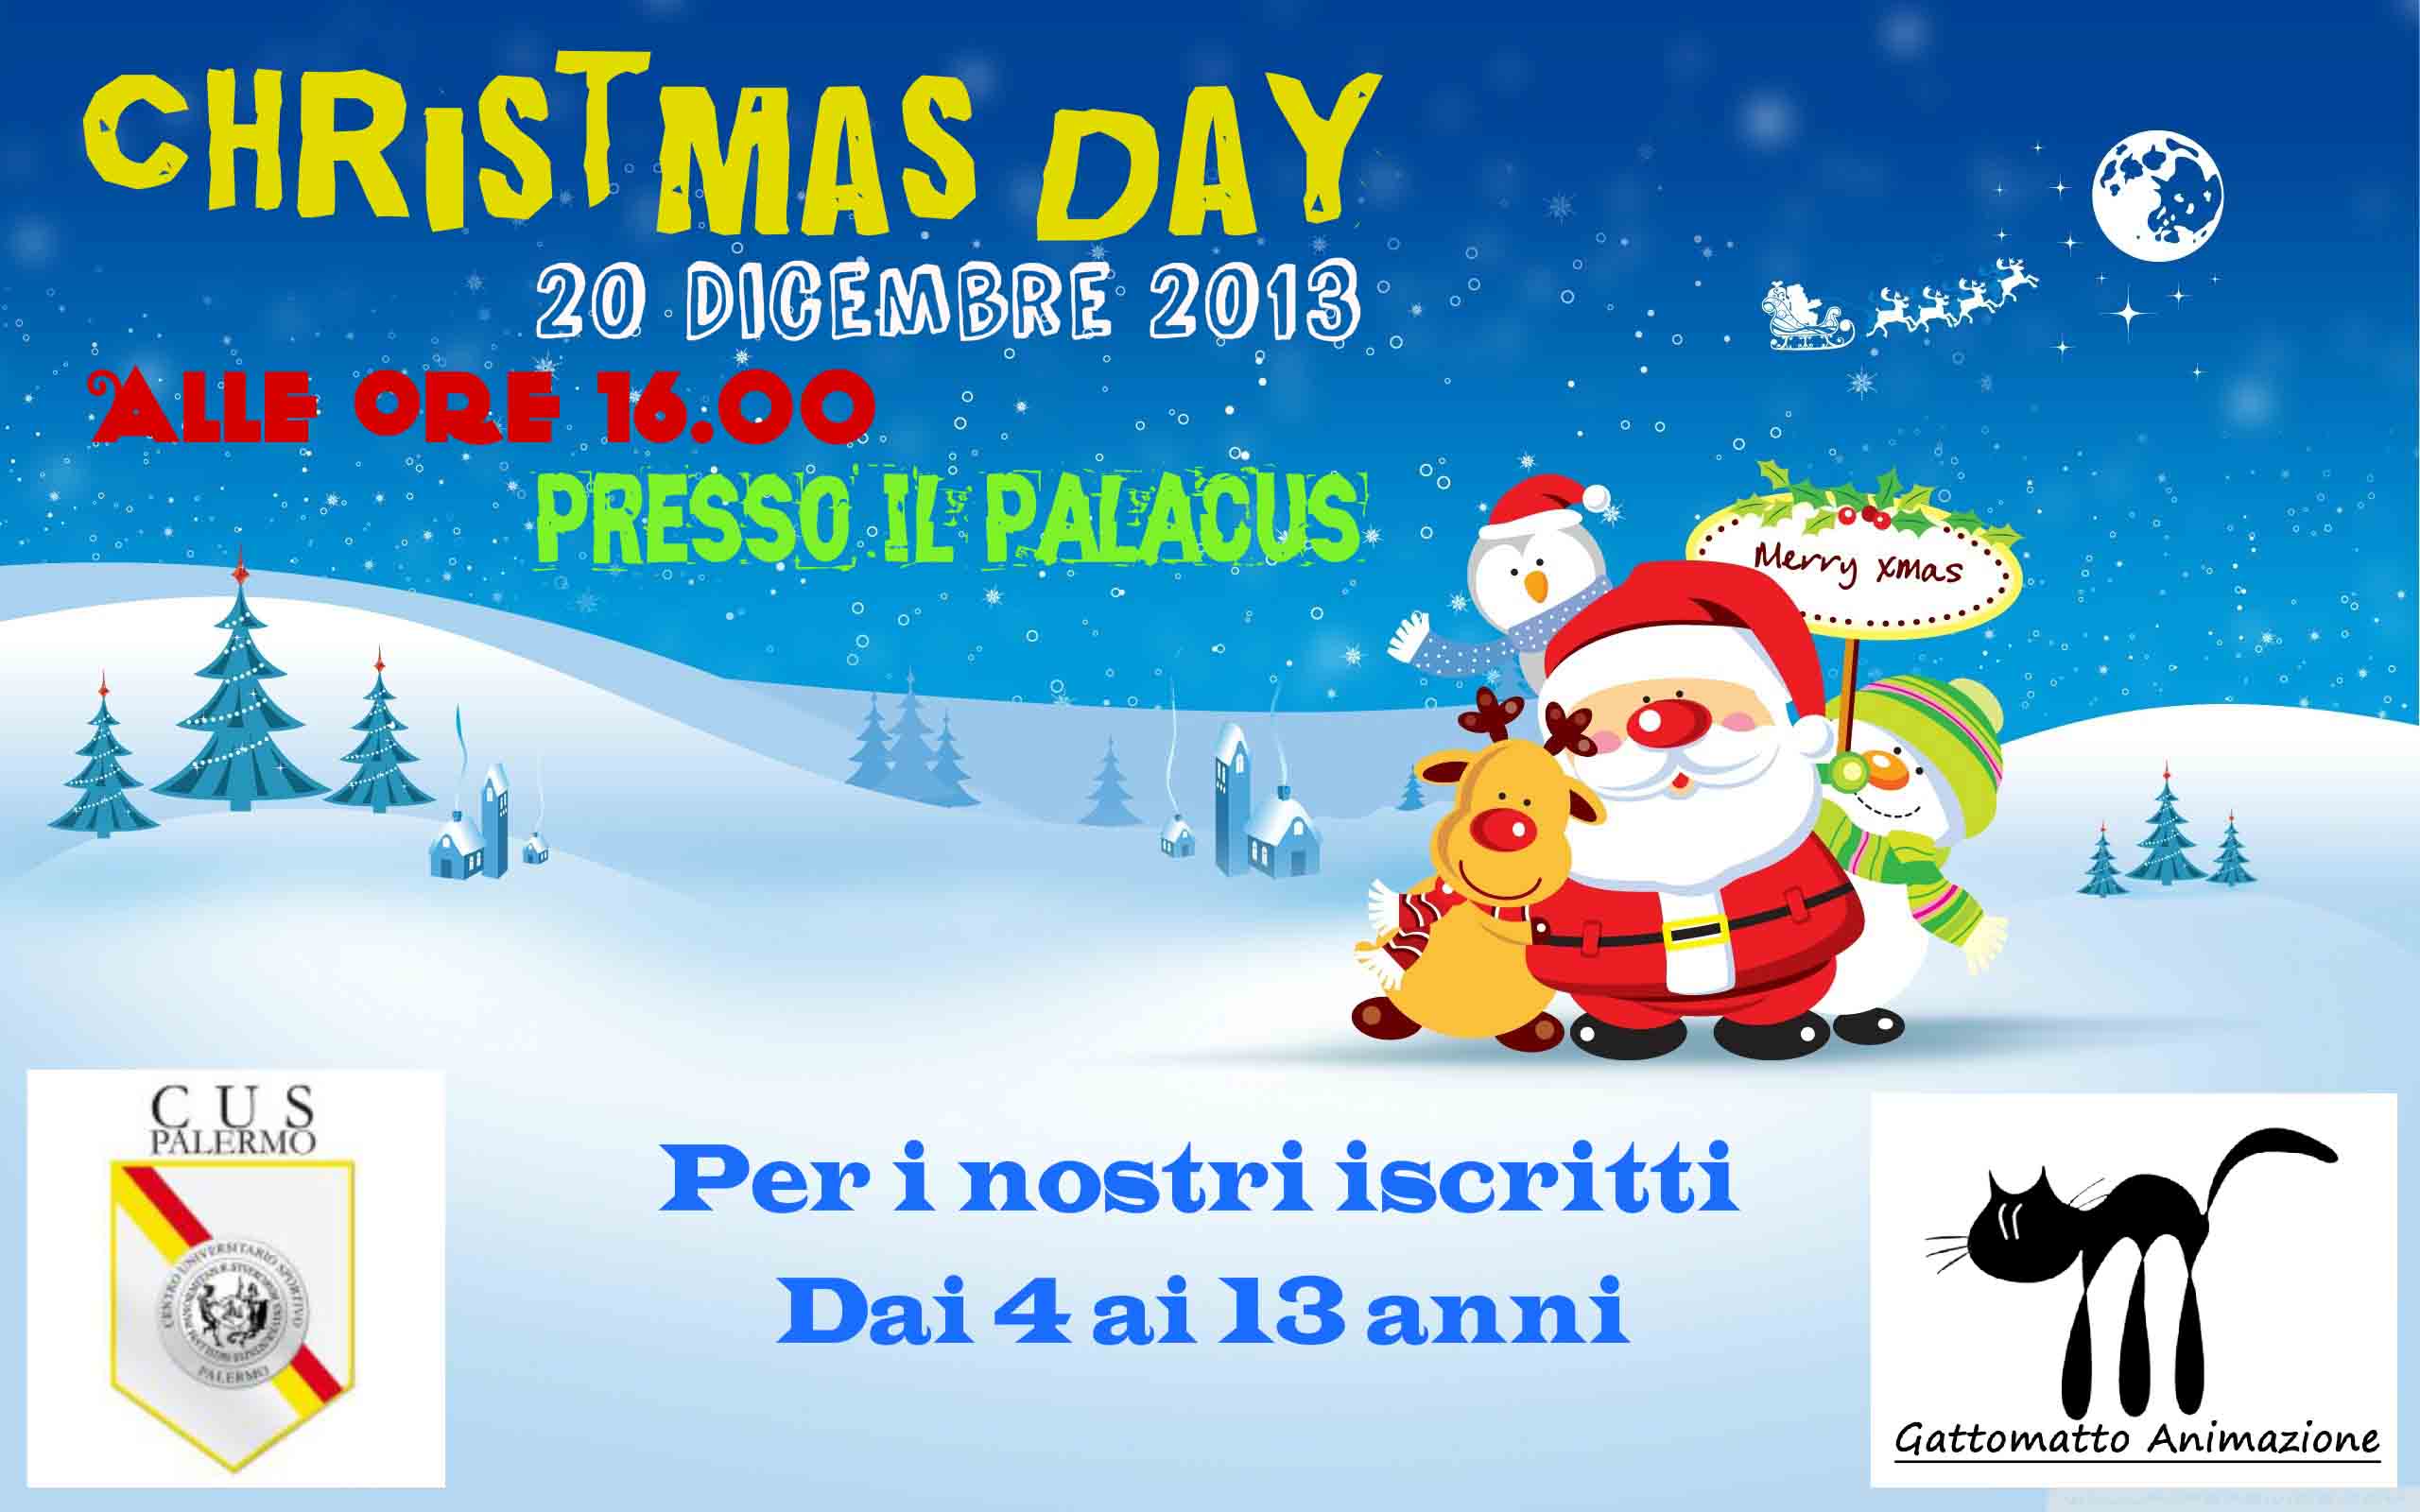 Perche Festeggiamo Il Natale.Eventi Christmas Day Cus Palermo Il 20 Dicembre Festeggiamo Insieme Cus Palermo